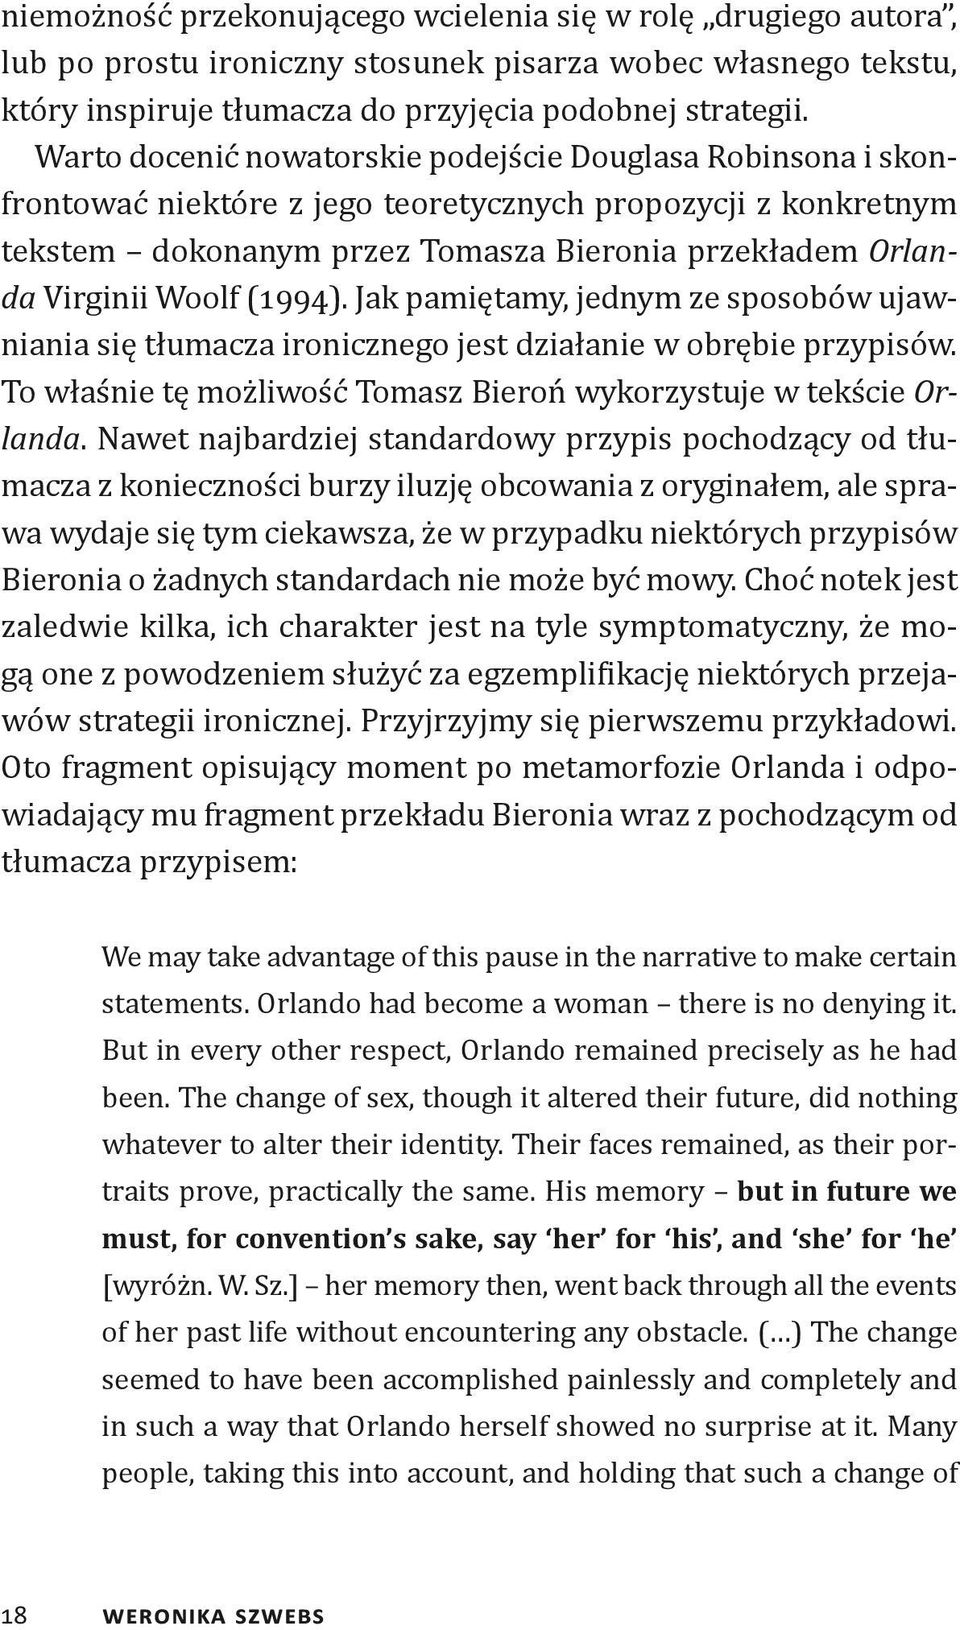 (1994). Jak pamiętamy, jednym ze sposobów ujawniania się tłumacza ironicznego jest działanie w obrębie przypisów. To właśnie tę możliwość Tomasz Bieroń wykorzystuje w tekście Orlanda.